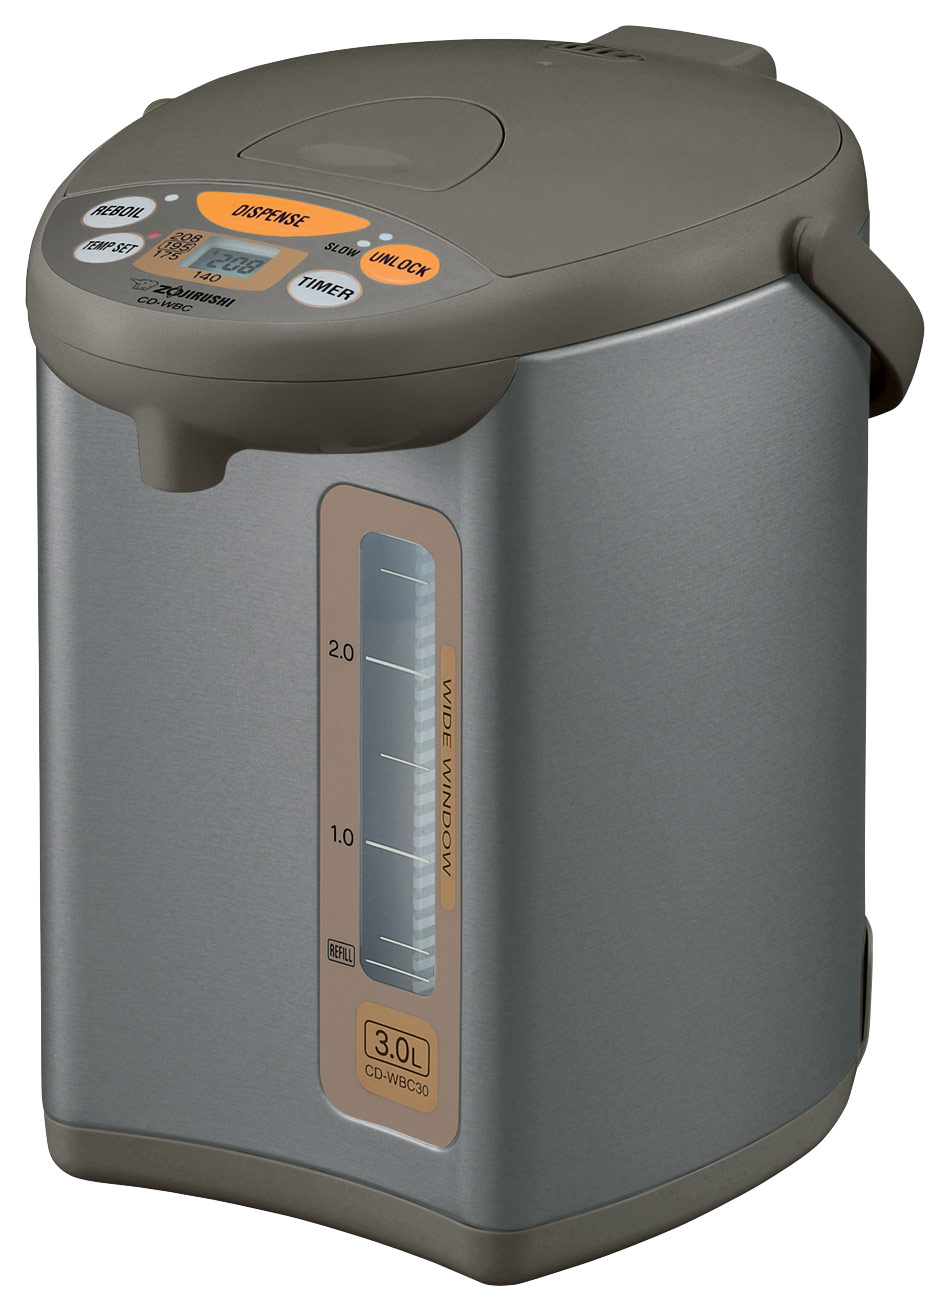 Sanyo U-C30M Electric Boiler Dispensing Pot Hot Water Boiler 3 Liter